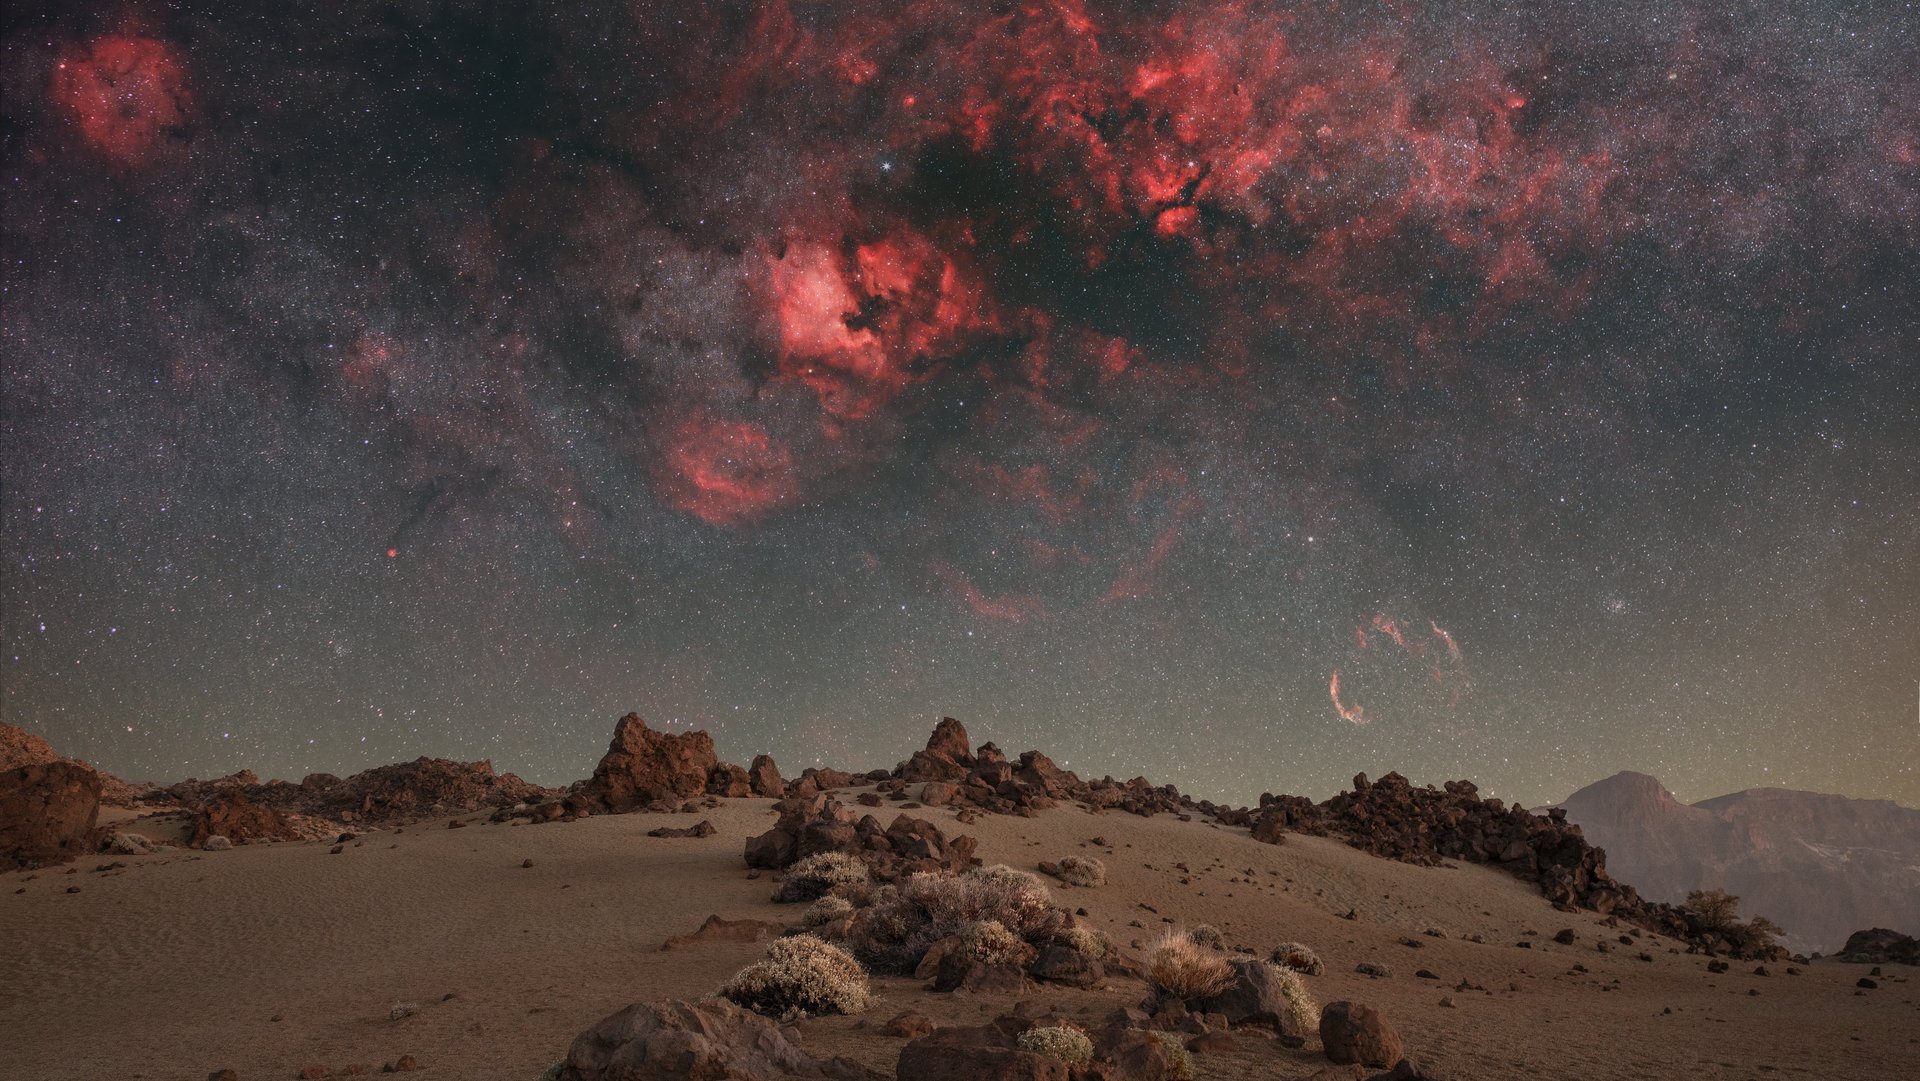 Unten ist eine steinige Wüste zu sehen. Der Himmel ist voller leuchtender Sterne und einem dunkelroten Galaxienebel.